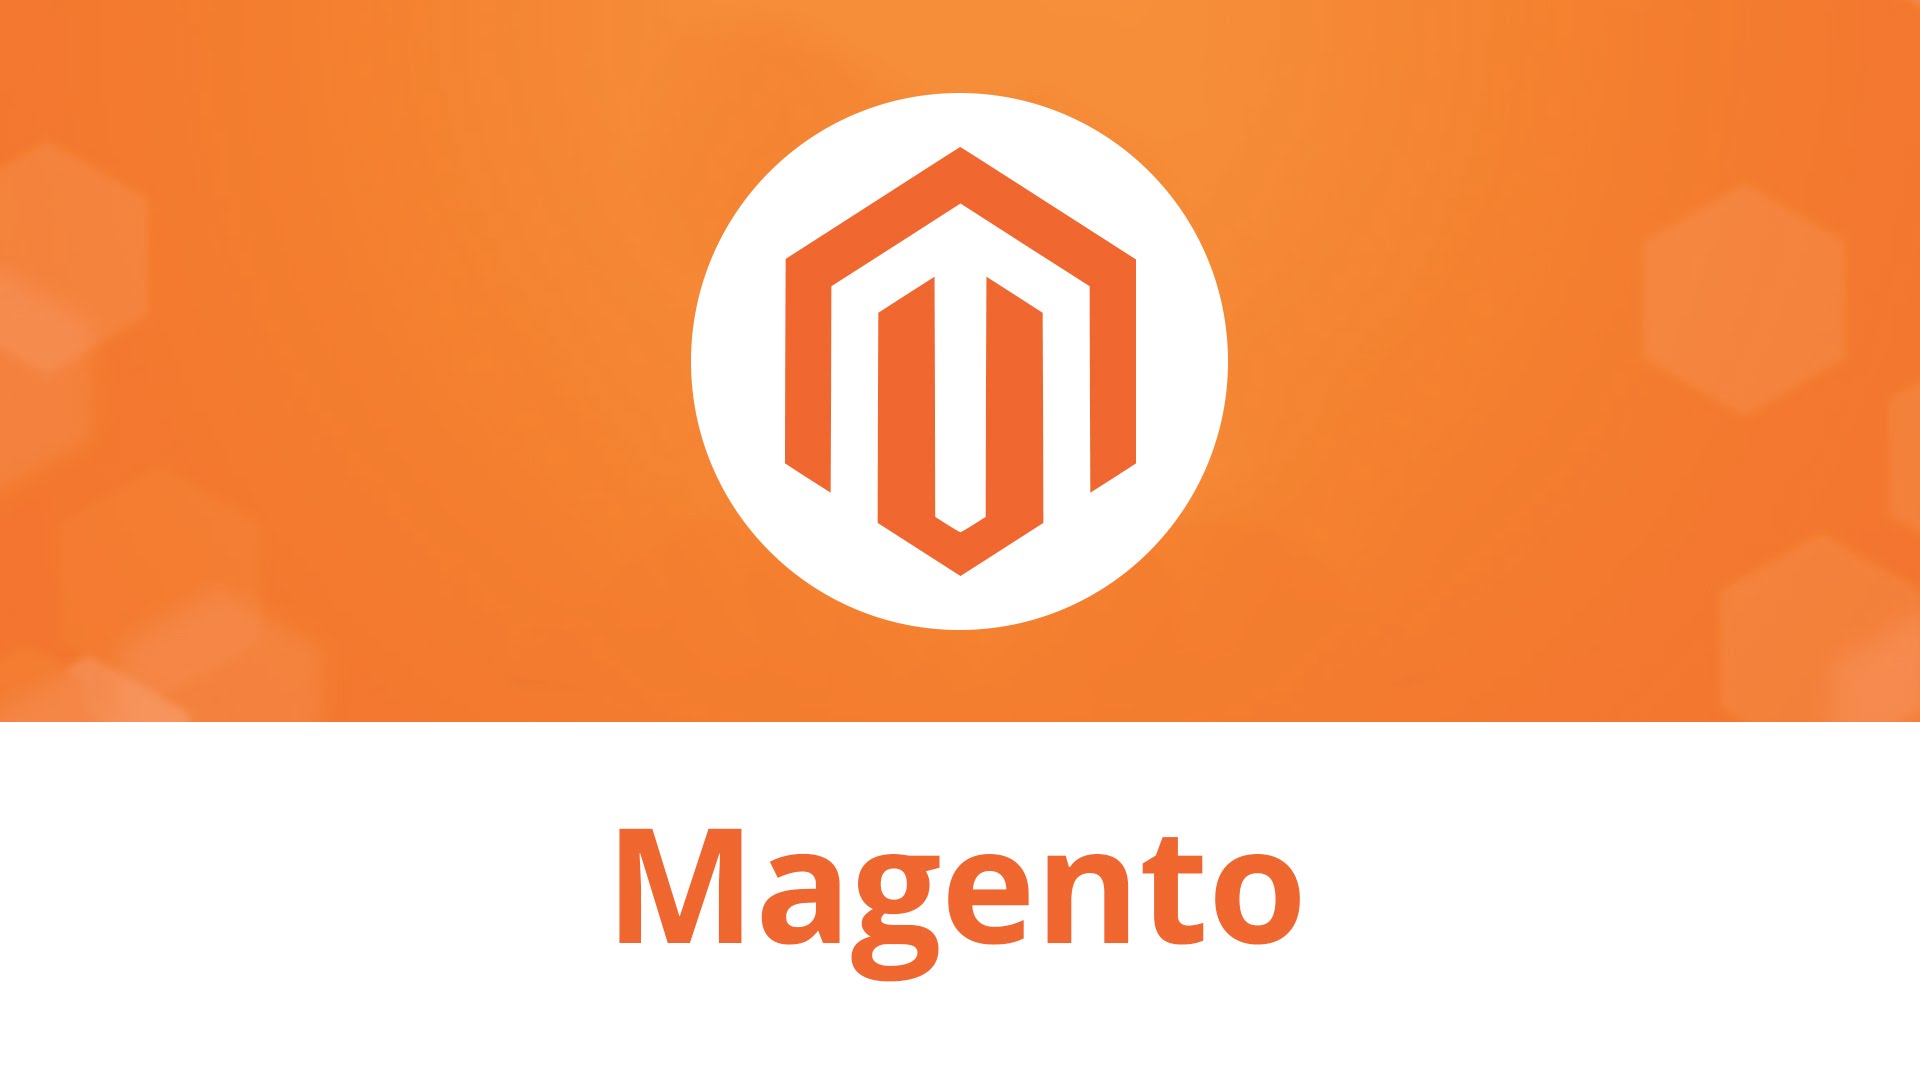 Magento дает пользователям полный контроль над функциями онлайн магазина и дизайном.